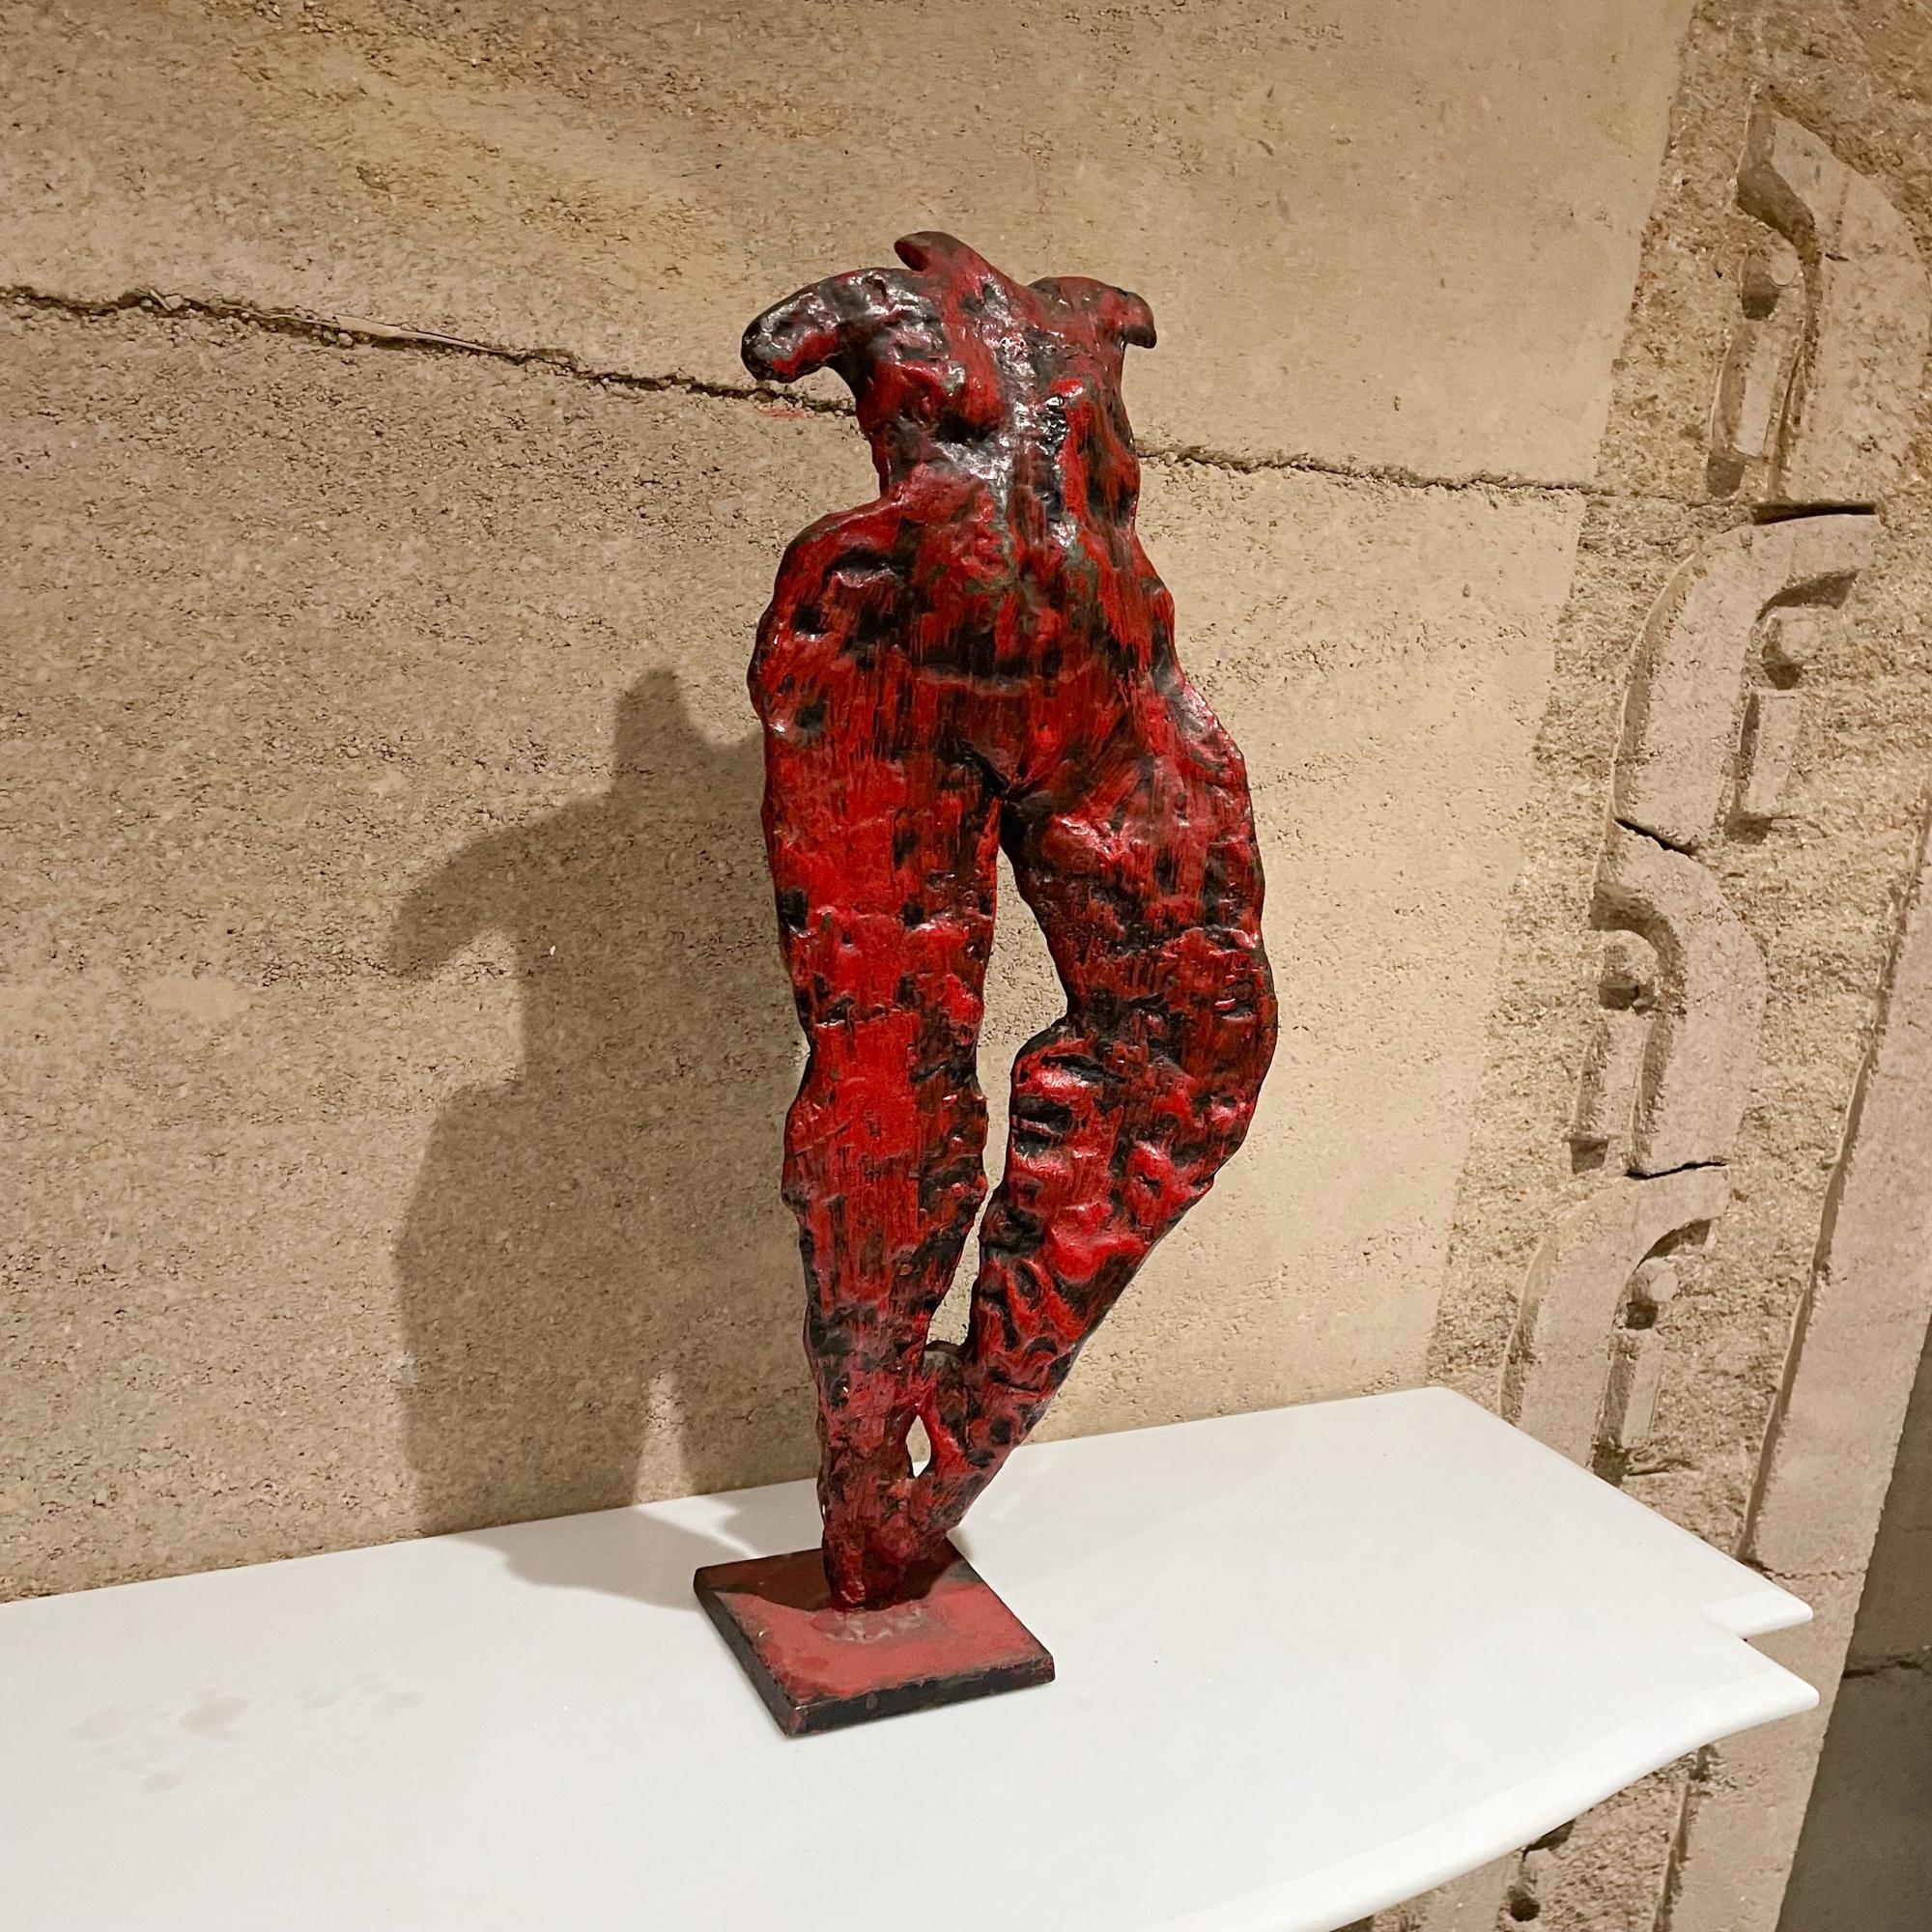 
Sculpture abstraite de danseuses nues modernes en bronze rouge
Bronze massif lourd patiné rouge et noir.
Non marqué. 
Dimensions : 21 H x 8 W x 4.5 D pouces.
Fabriqué en France dans les années 1950.
Très bon état d'origine non restauré. Patine